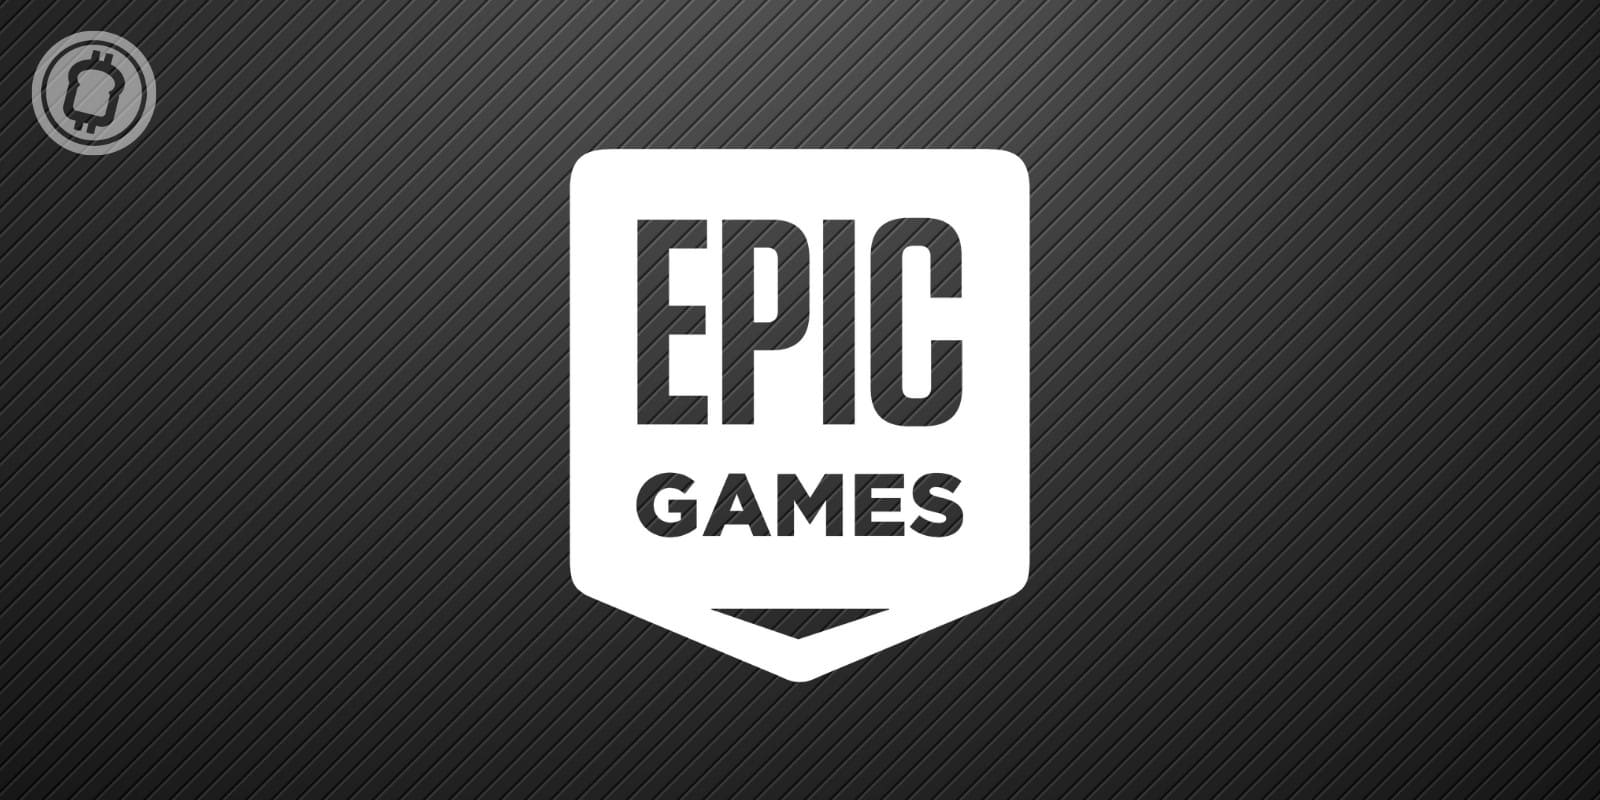 Le studio Epic Games lève 2 milliards de dollars pour bâtir un metaverse